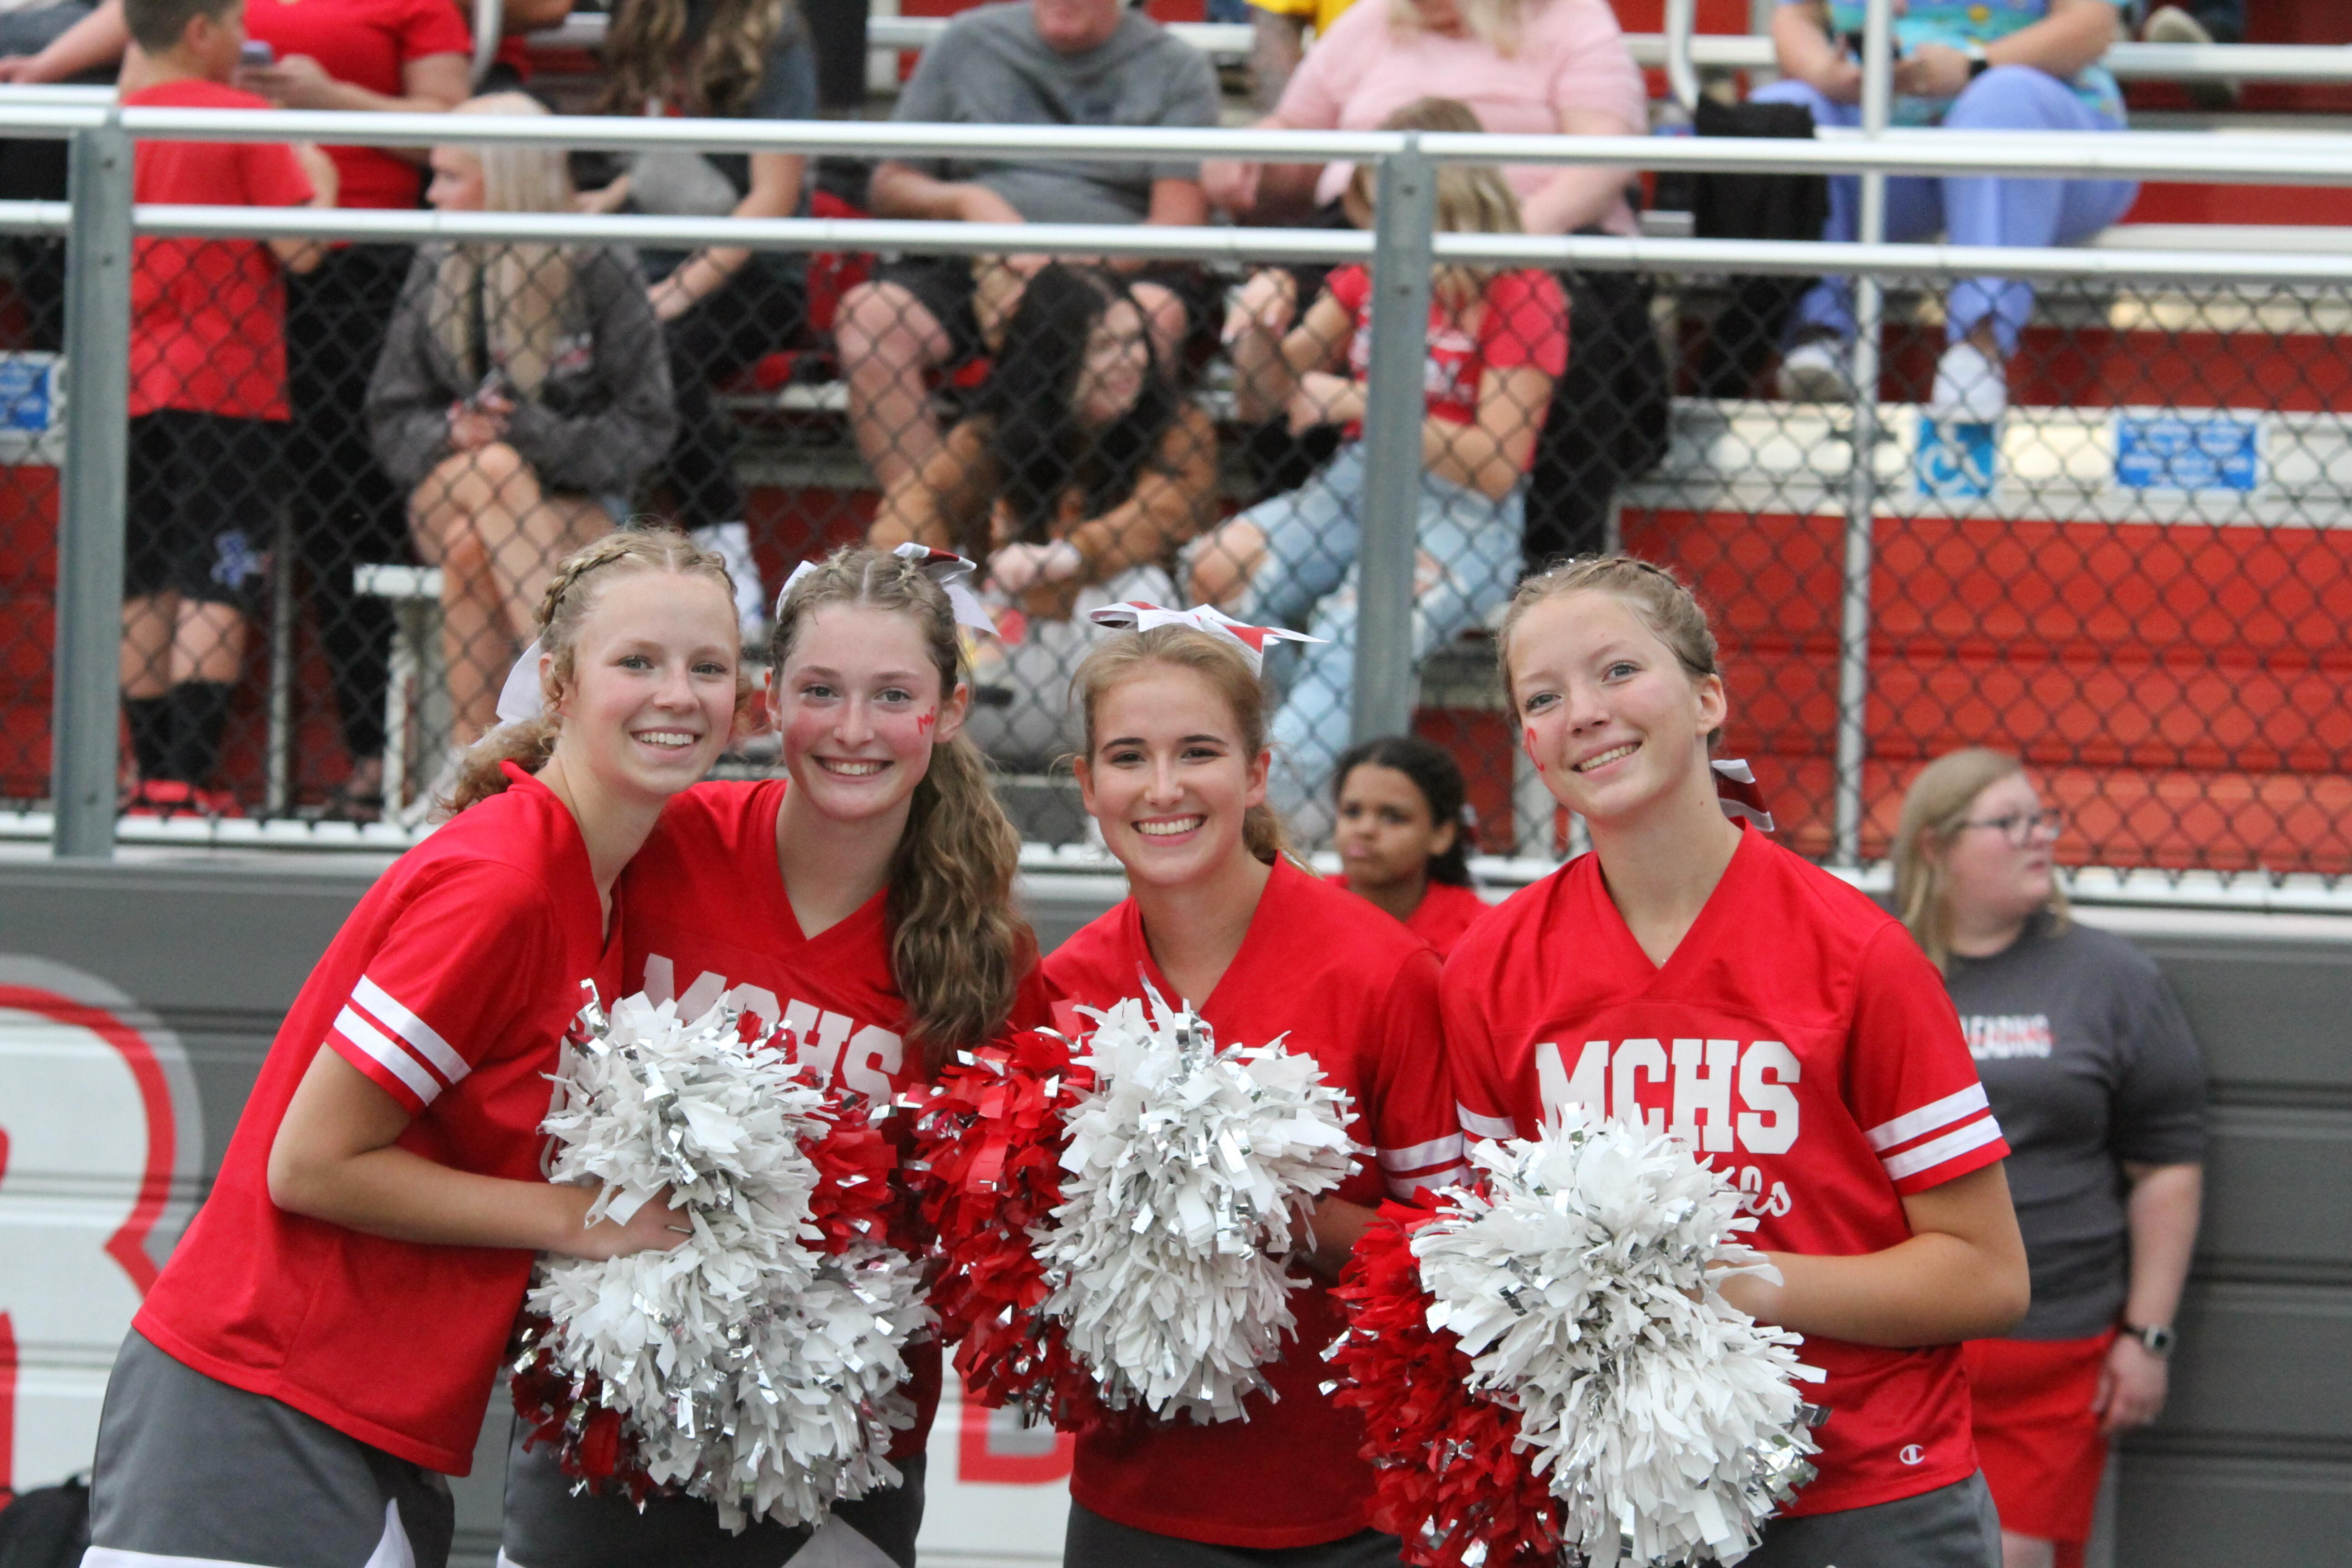 MCHS Cheerleaders